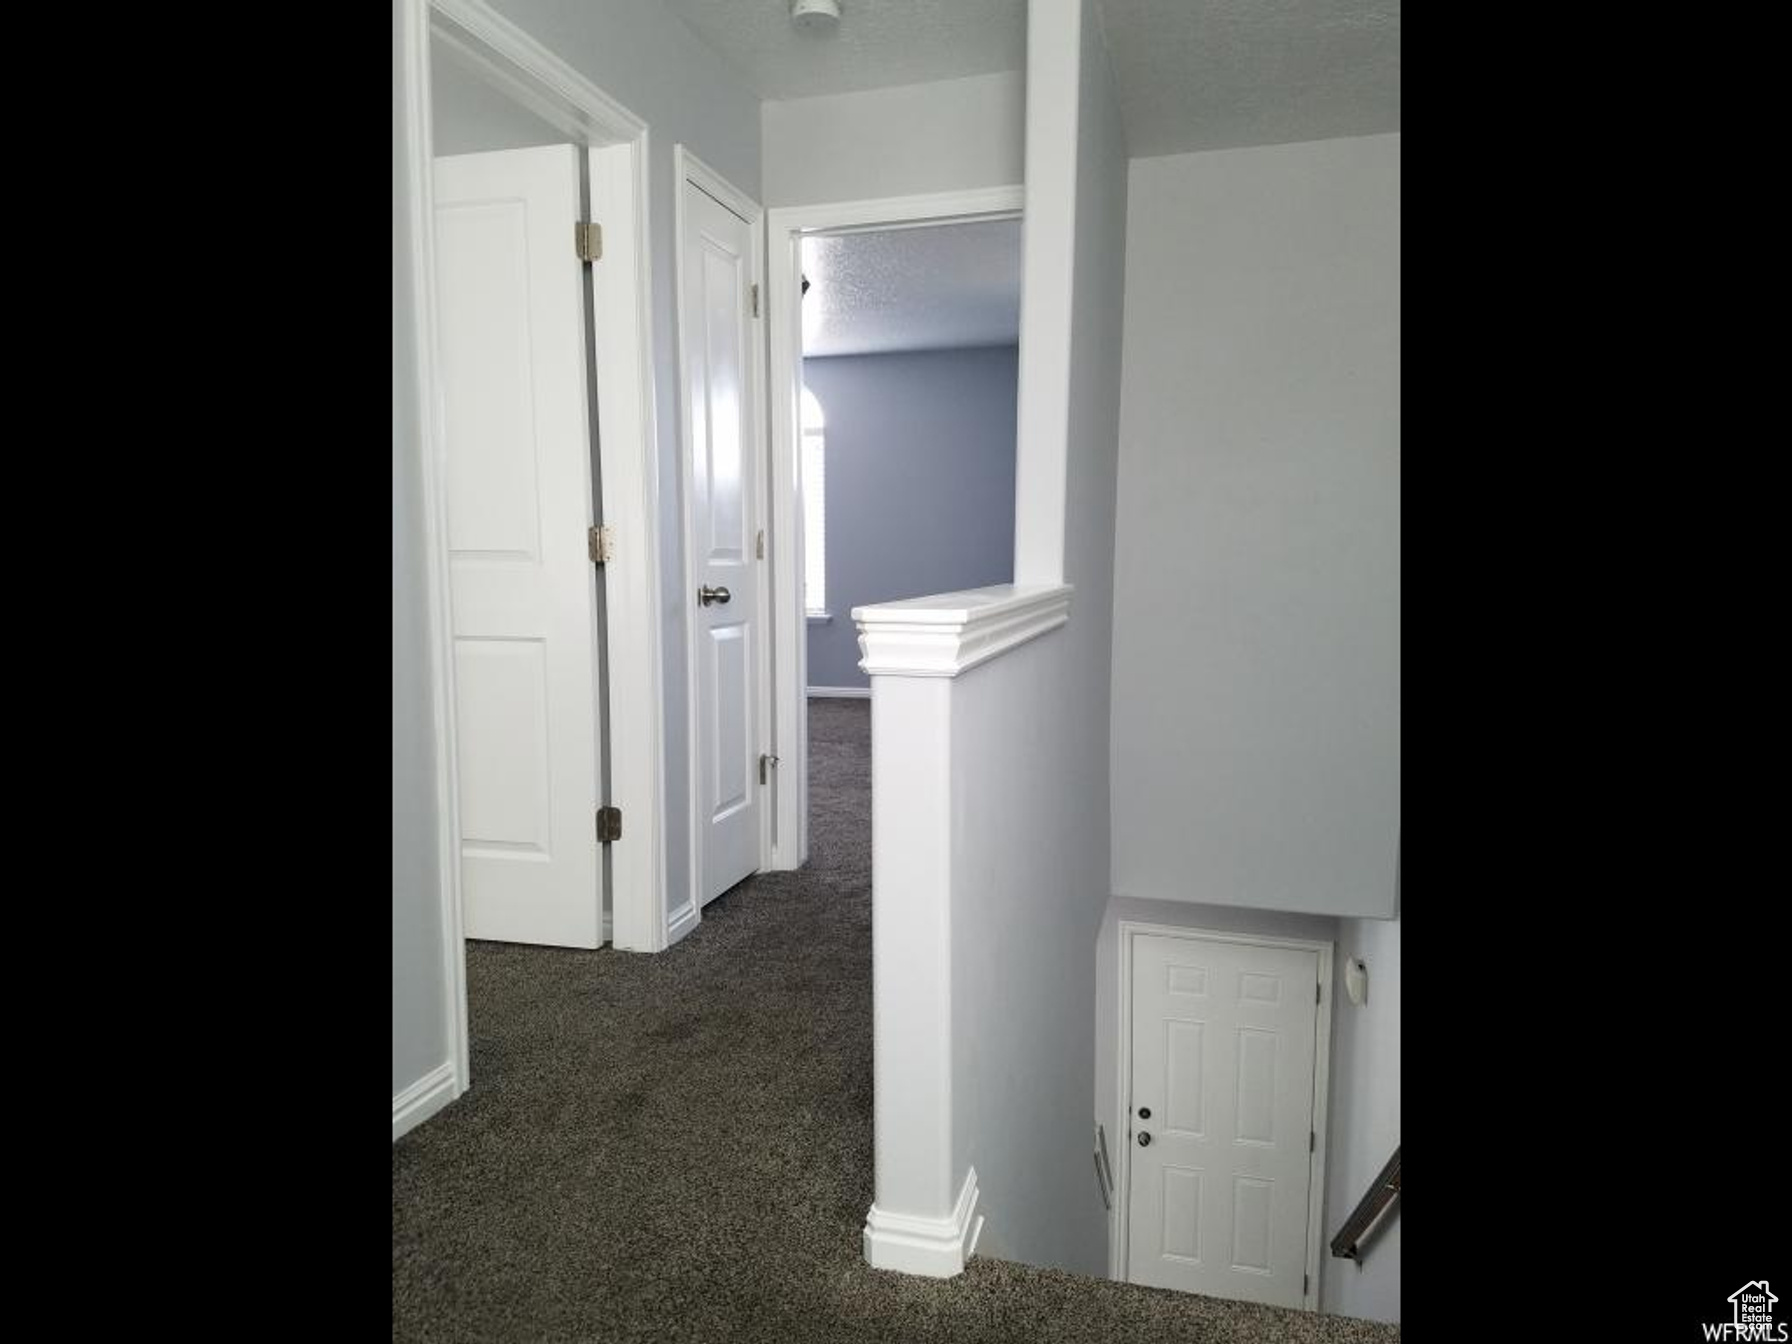 View of Upper Hallway, Stairs, Front Door, Guest Bedroom, Main Bedroom, & Linen Closet